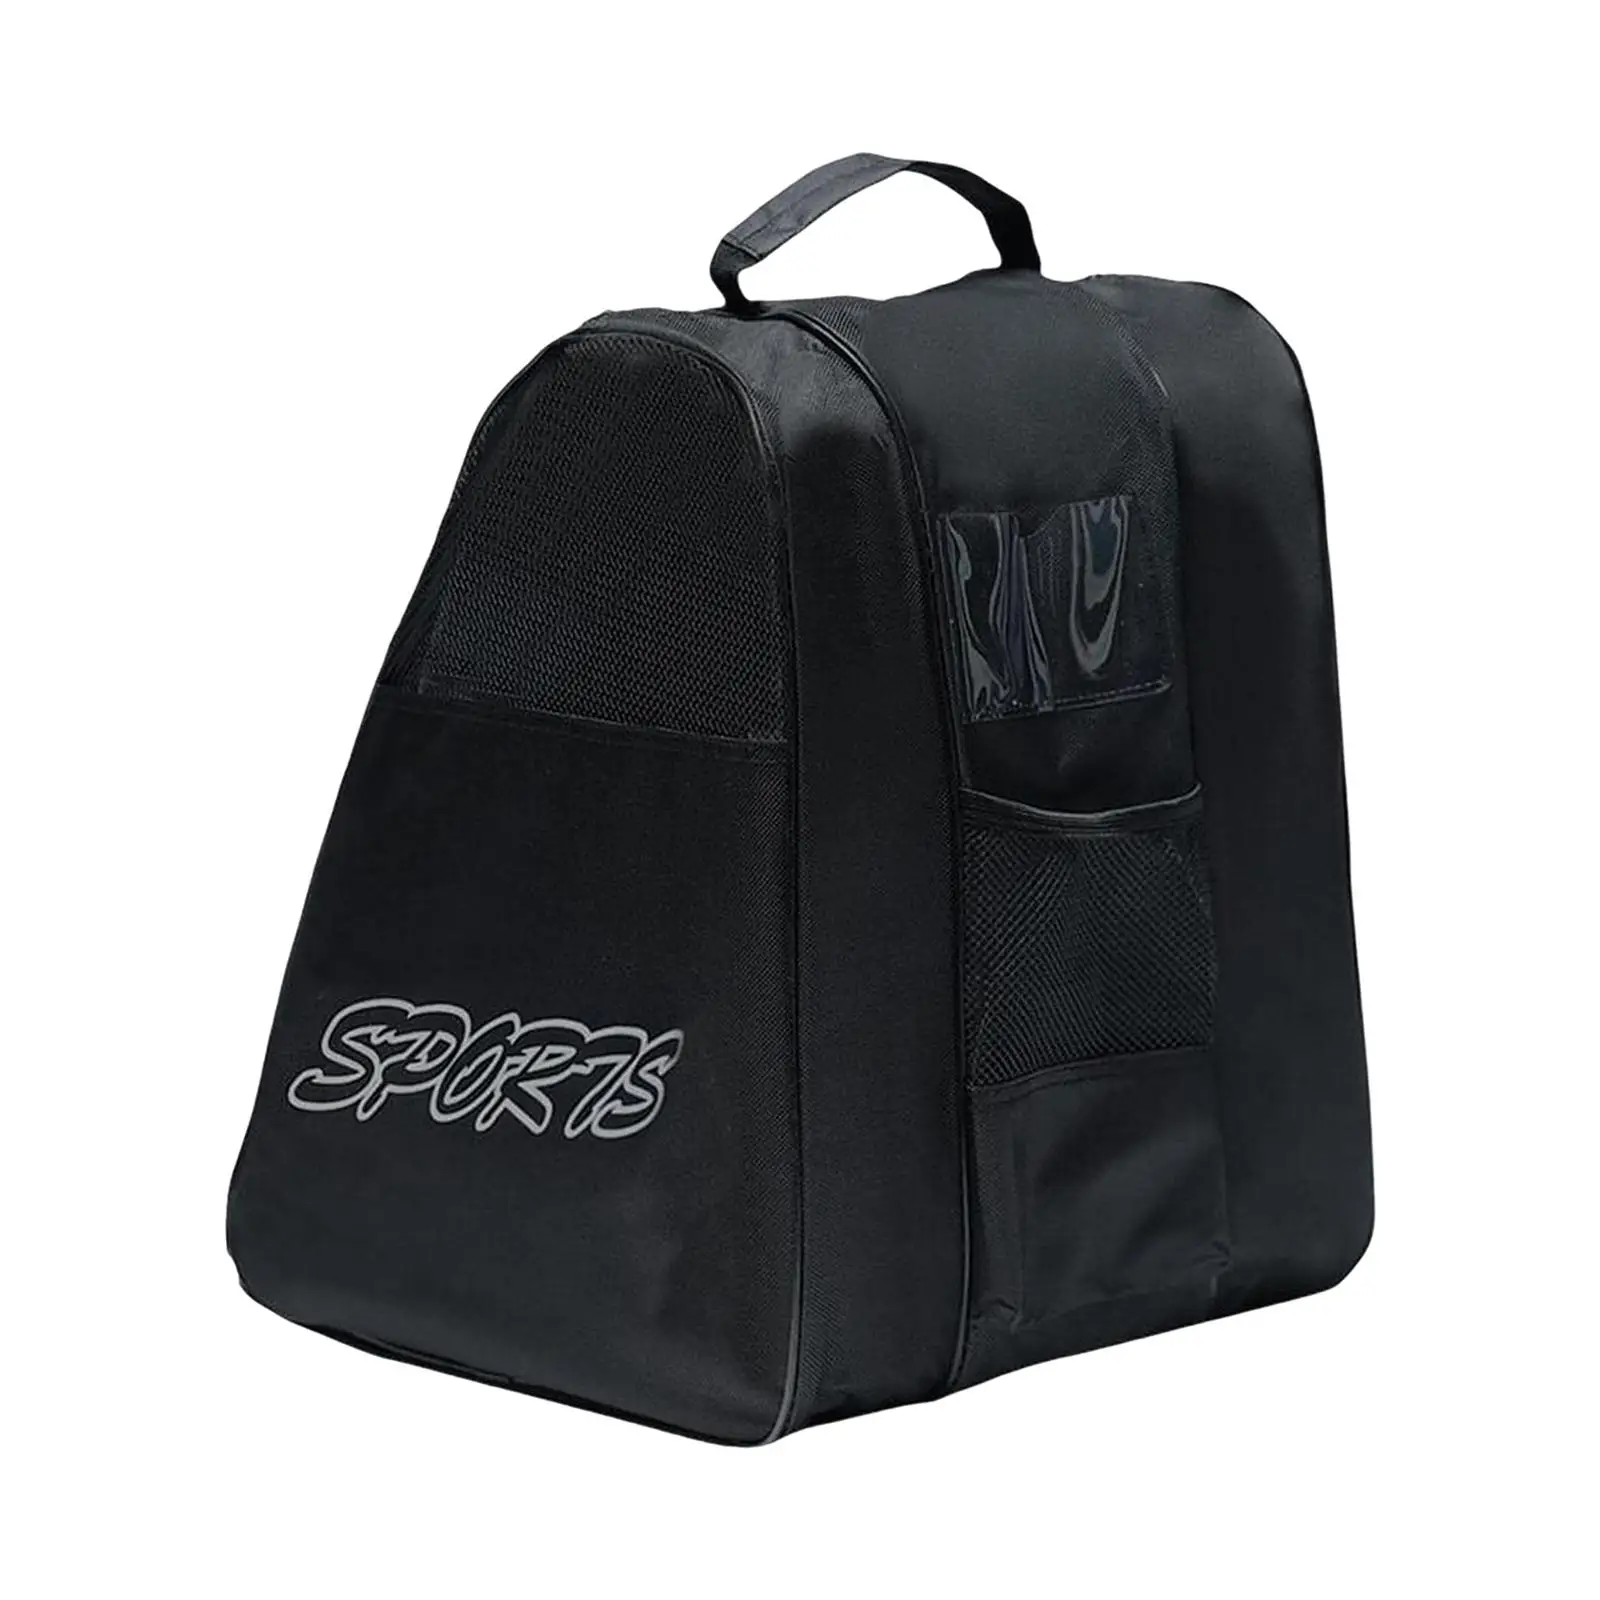 Roller Skate Bags Adjustable Shoulder Strap Accessories Skating Shoes Storage Bag for Ice Hockey Skate Quad Skates Inline Skates